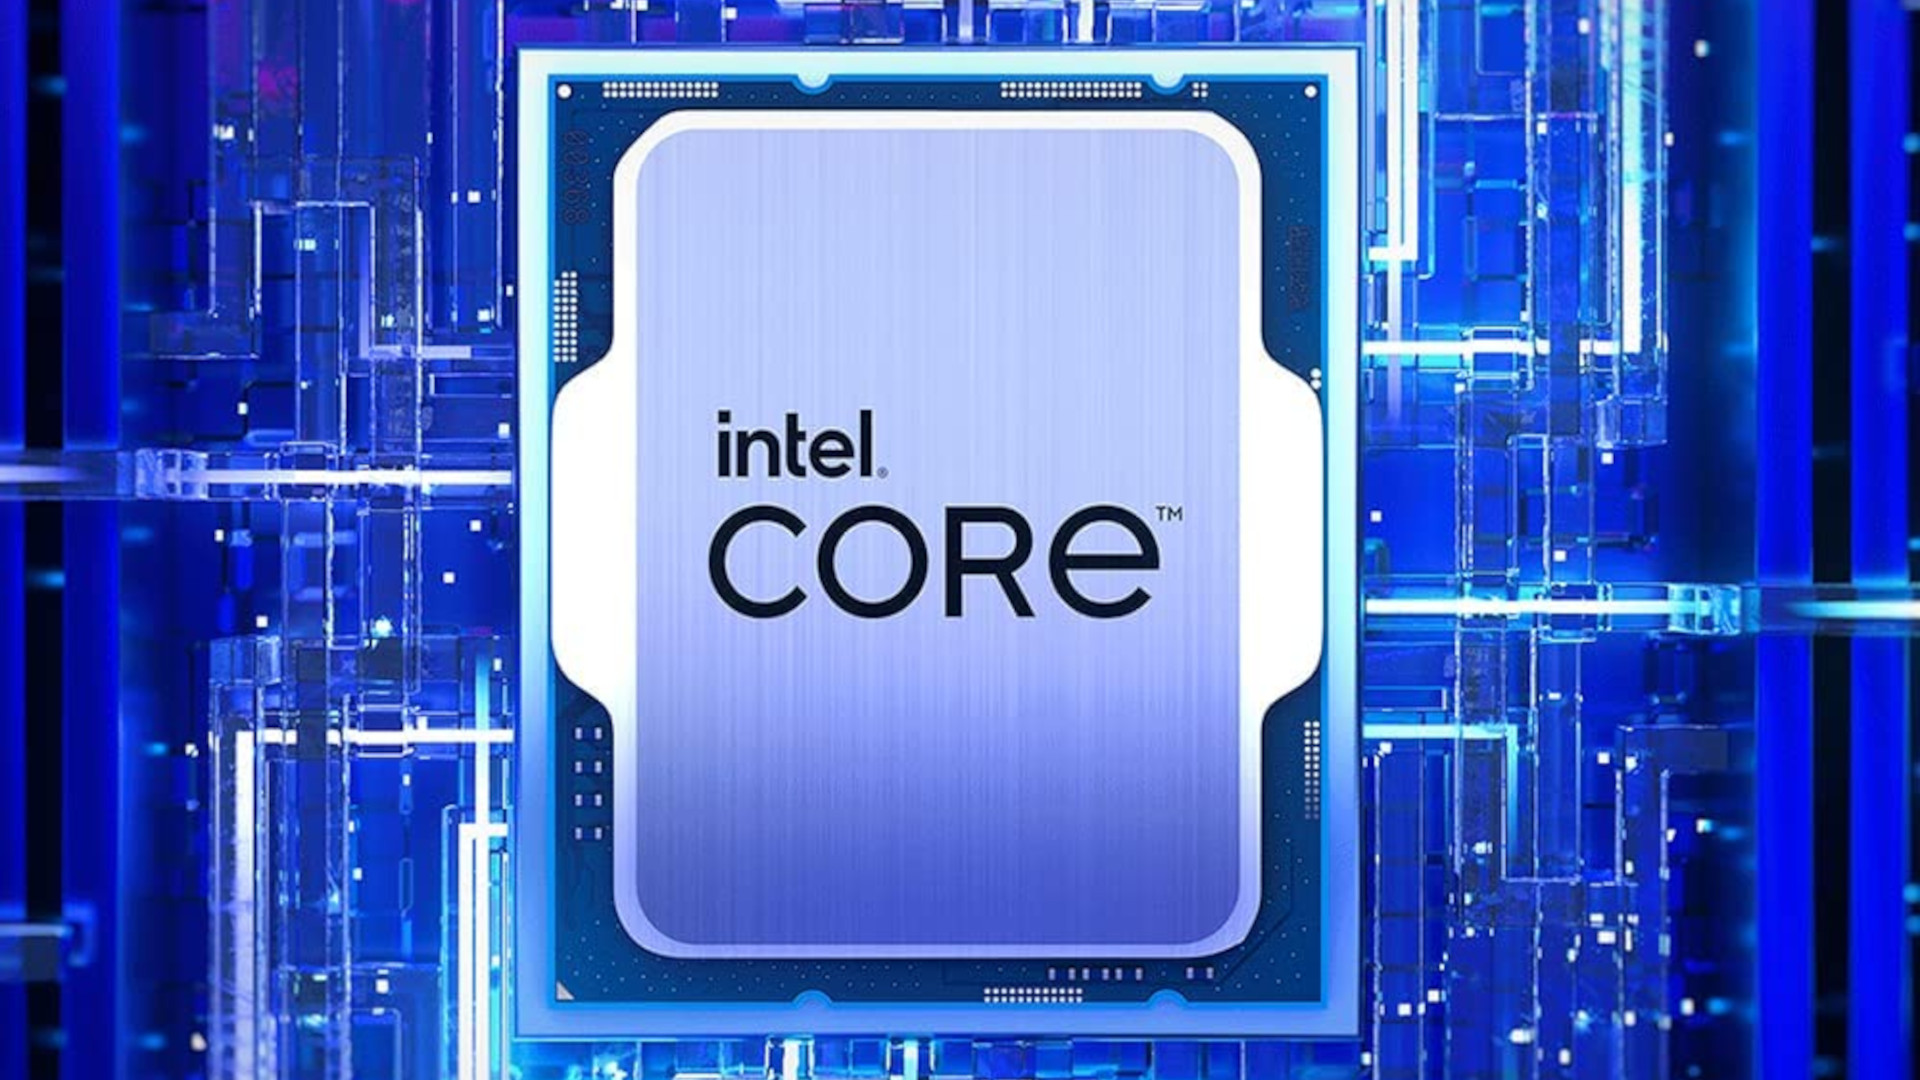 Intel Core i9 13900K overclock smashes previous world record